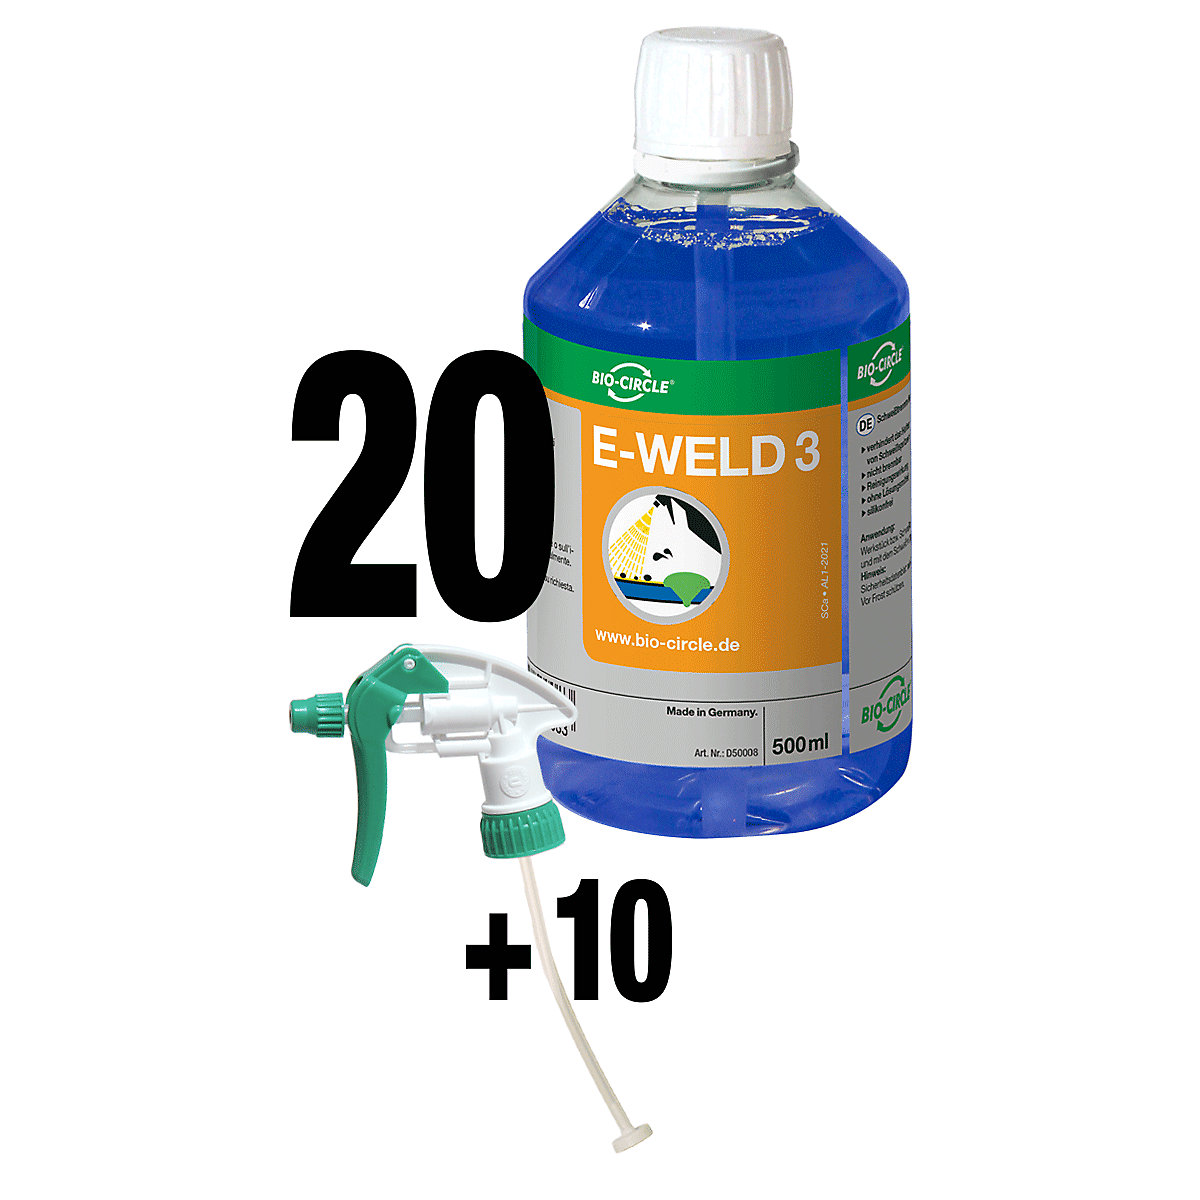 Ochranný svářečský sprej E-WELD 3 – Bio-Circle